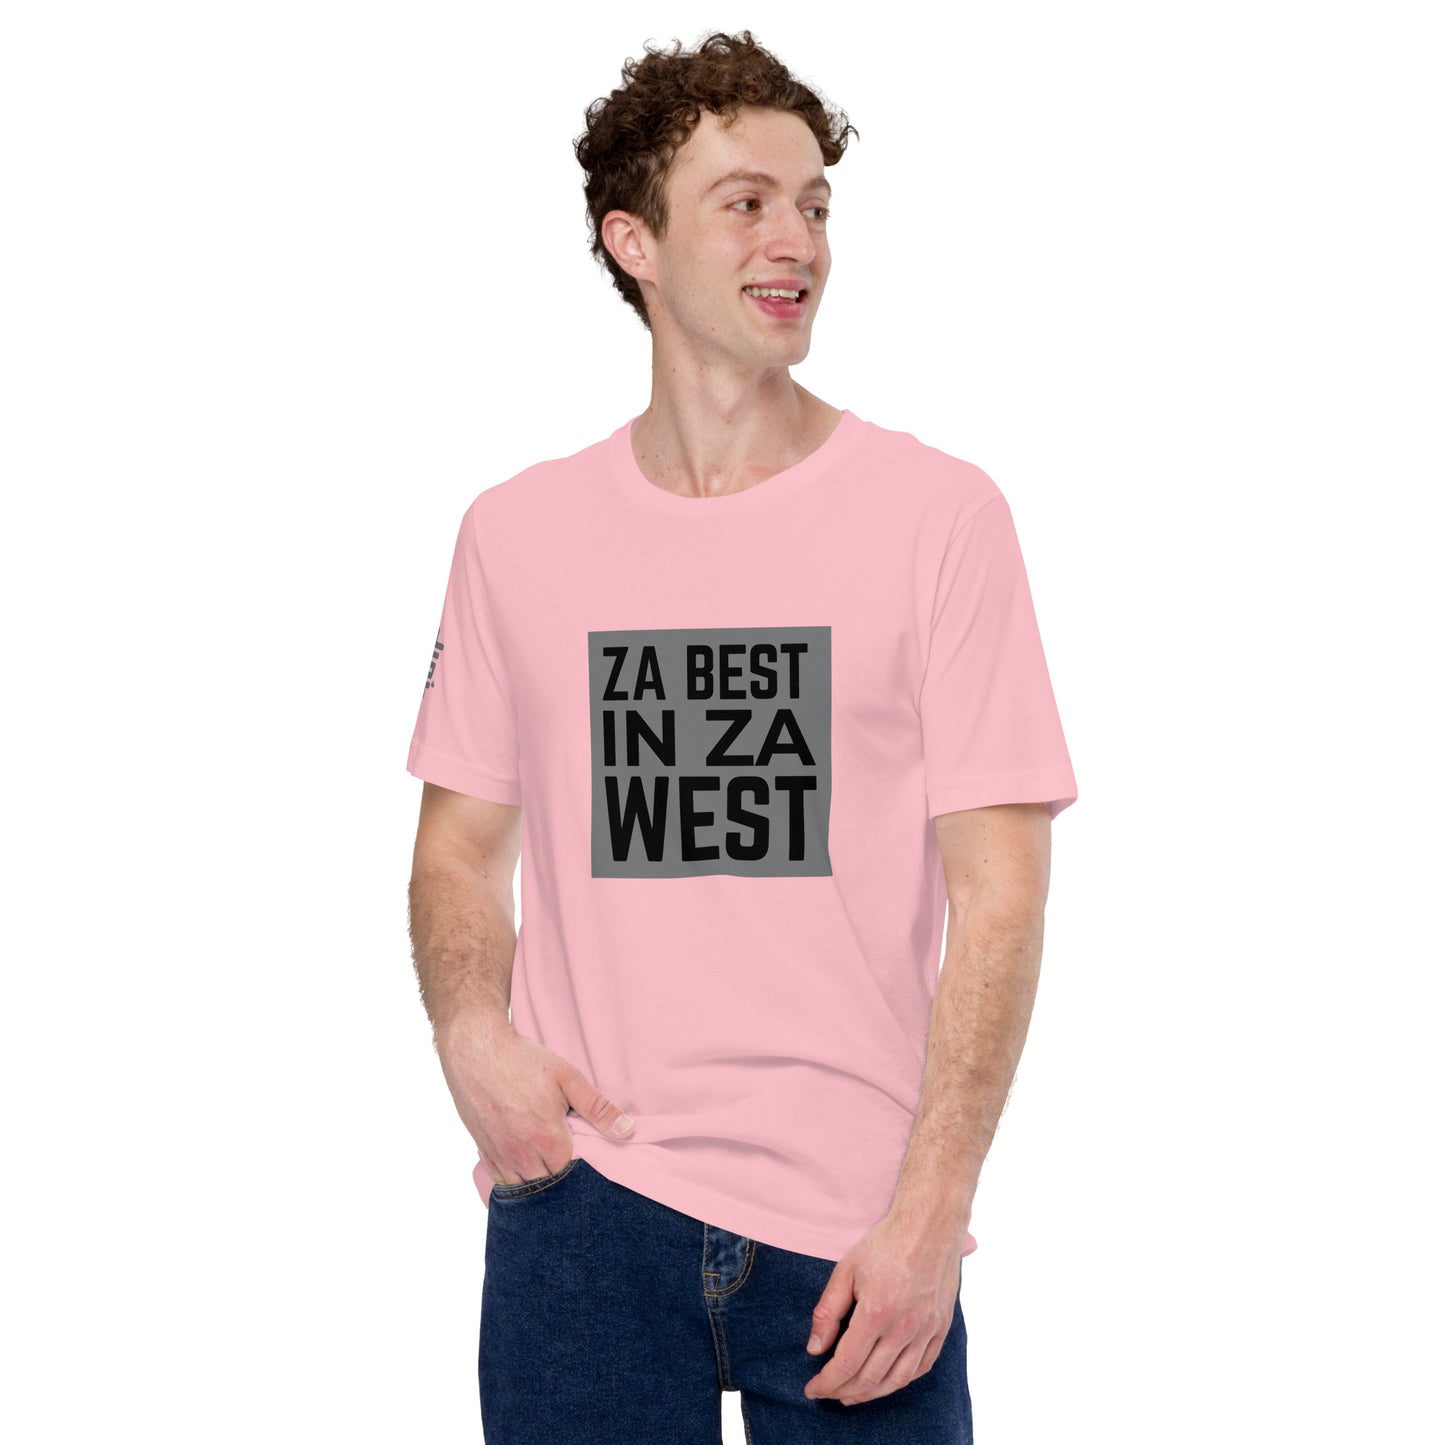 Za Best - Sweatshirt